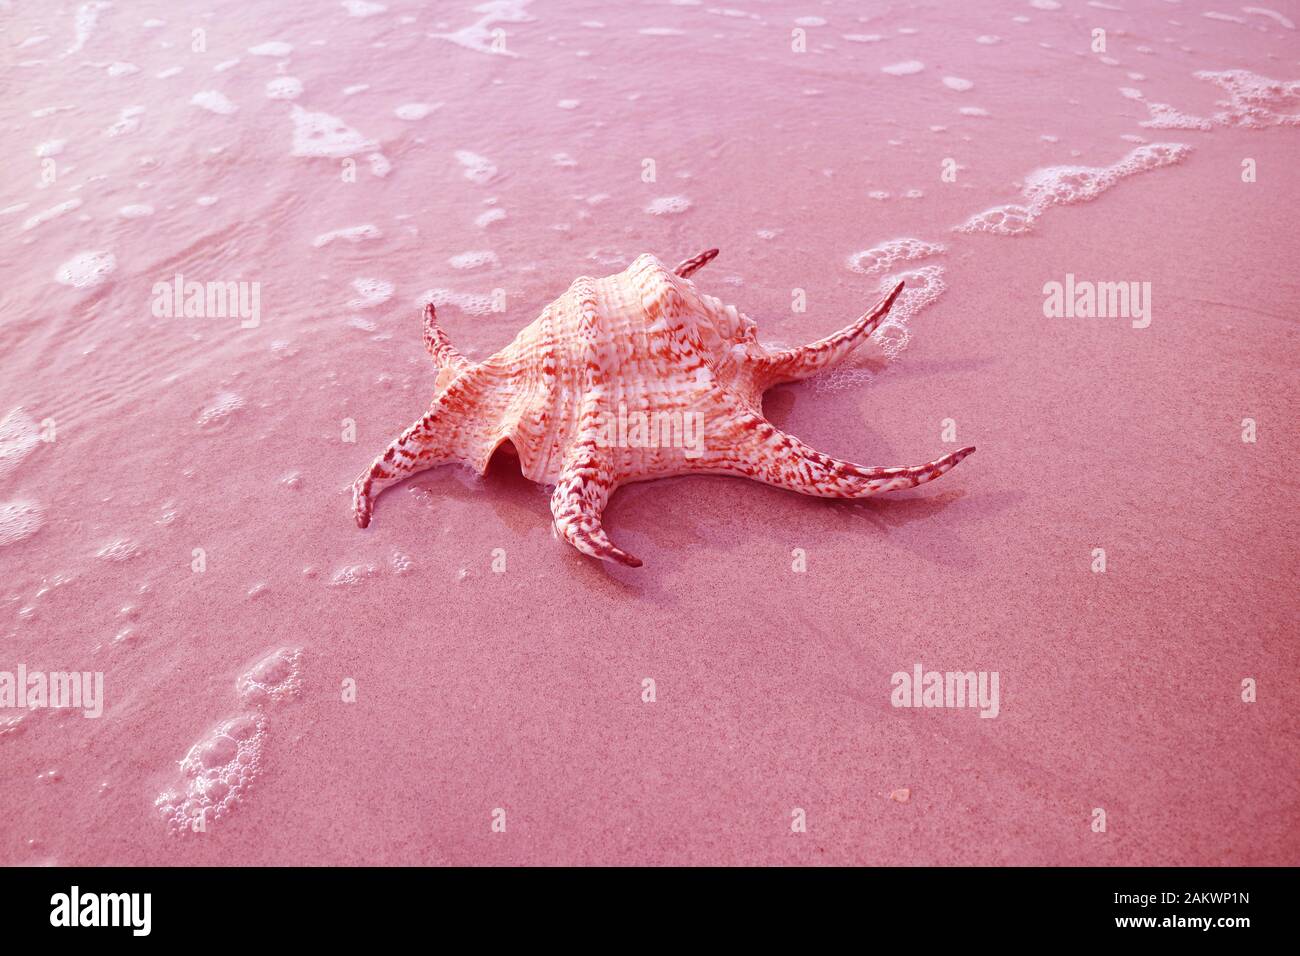 Surreale Pop Art Style Rosa Colorata Chiragra Spider Conch Shell Su Sabbia Beach Con Schiuma Di Mare Foto Stock